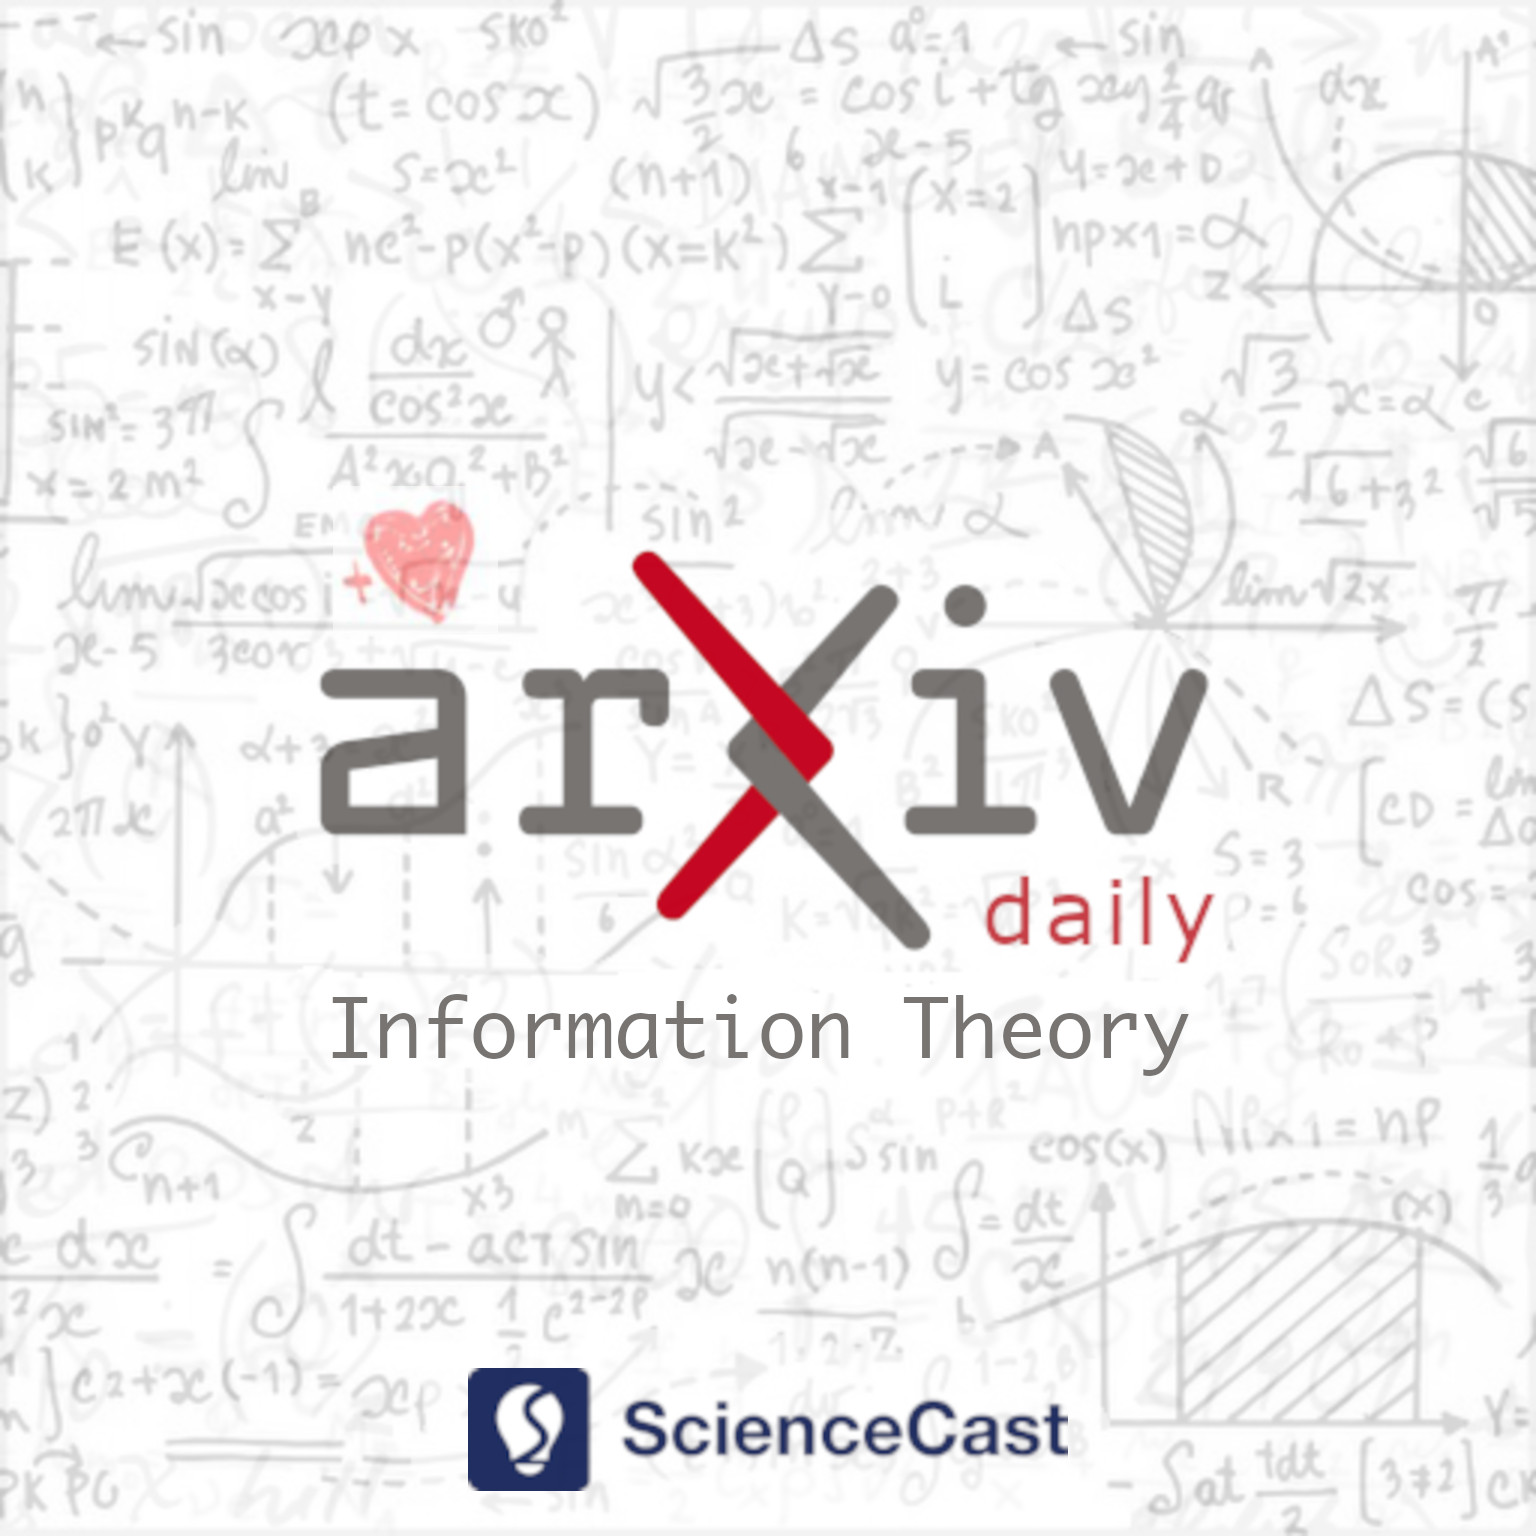 arXiv daily